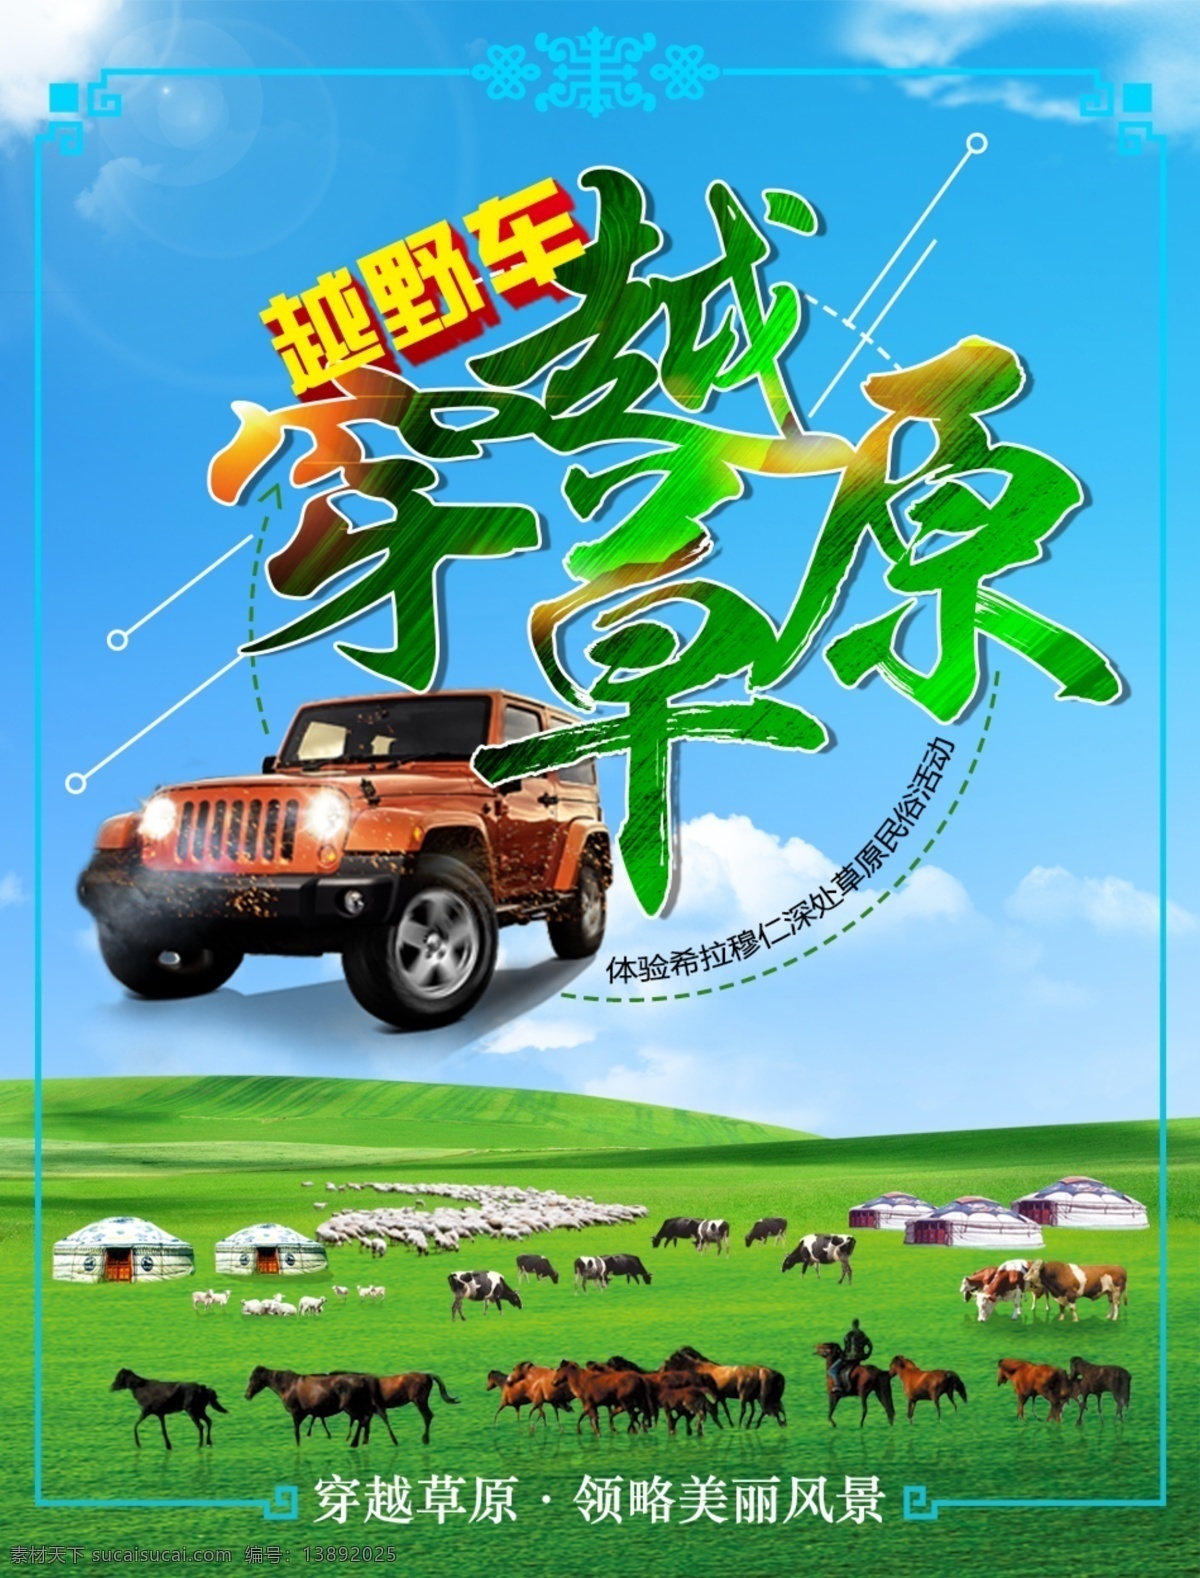 旅游行程图 旅游 内蒙古 草原 越野 穿越草原 海报 原创作品